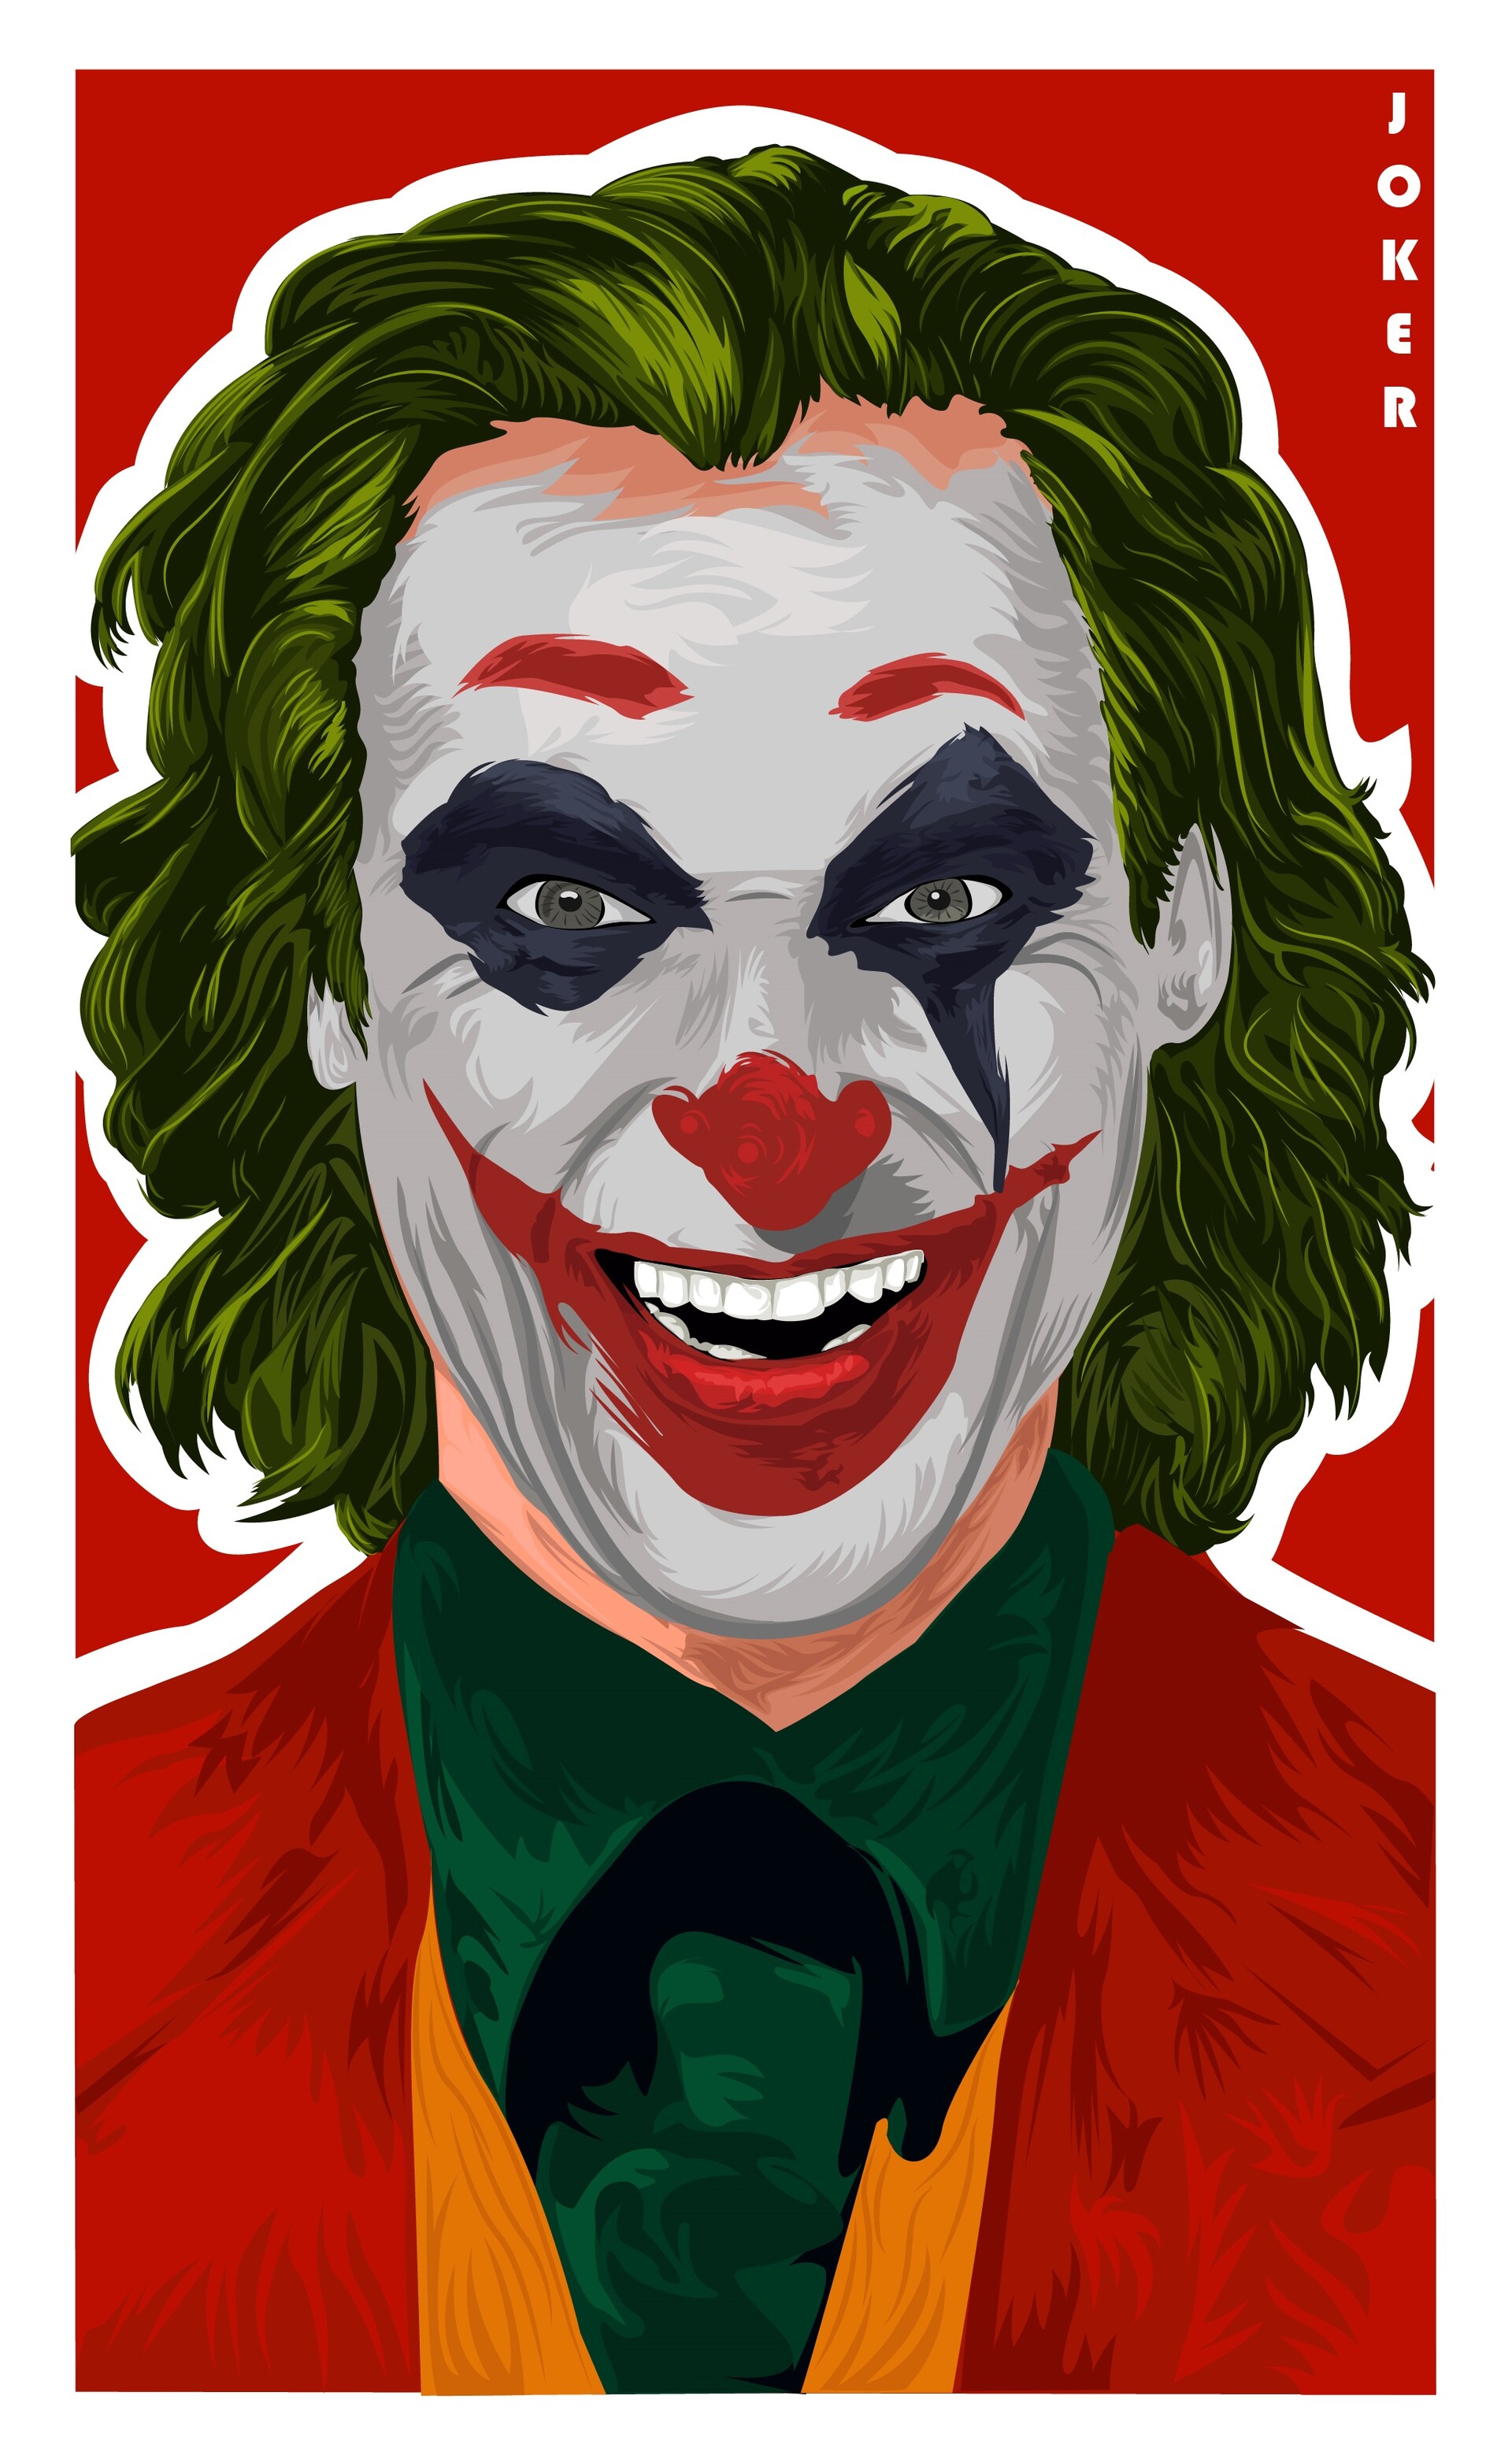 ArtStation - Joker face with smile